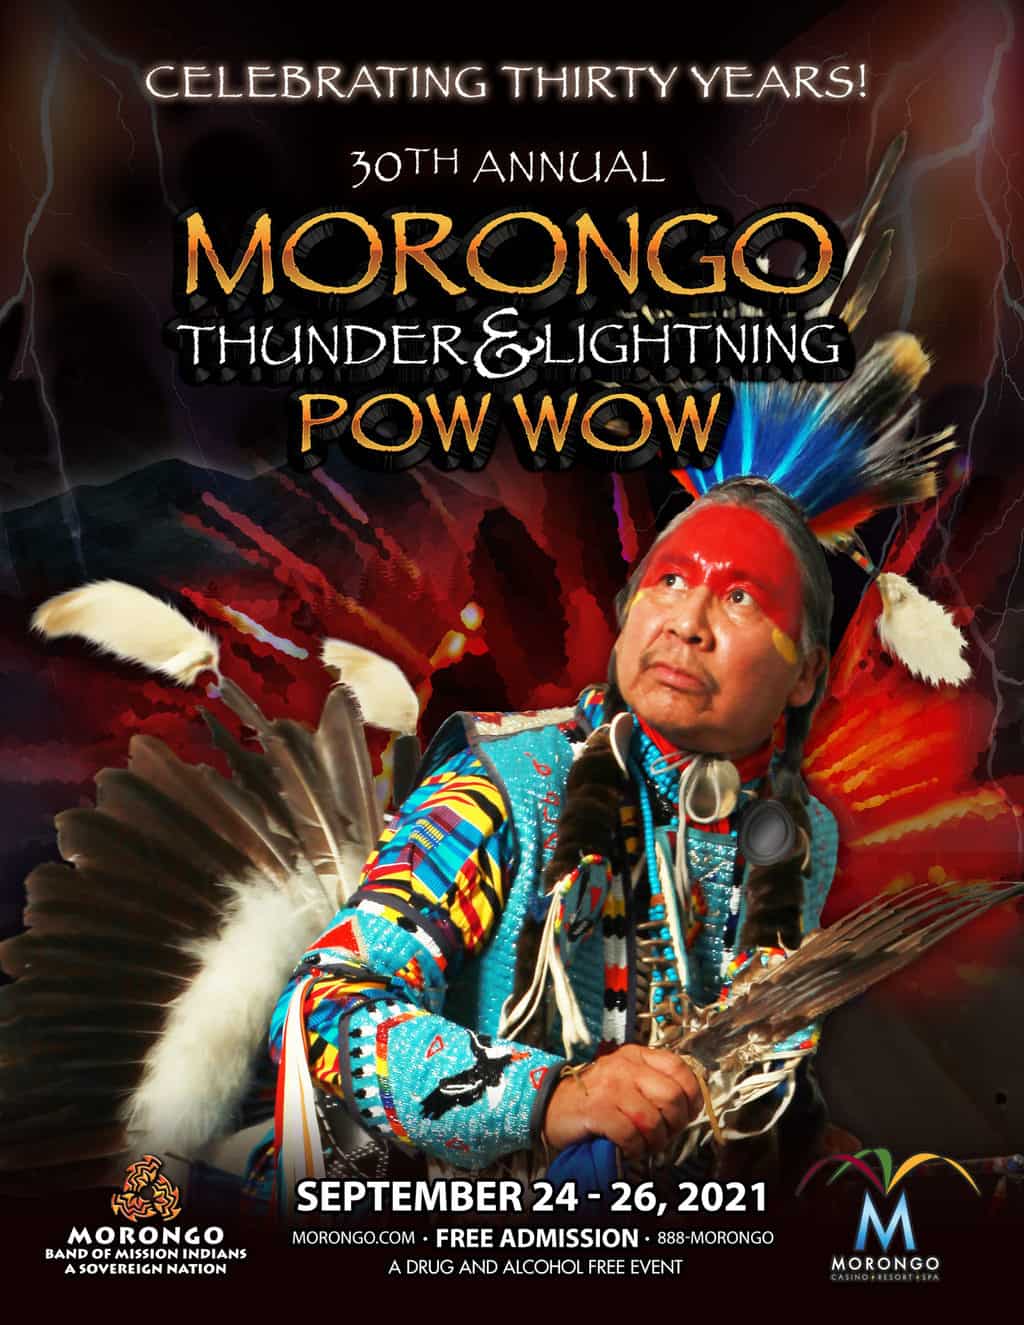 Morongo Thunder and Lightning Pow Wow